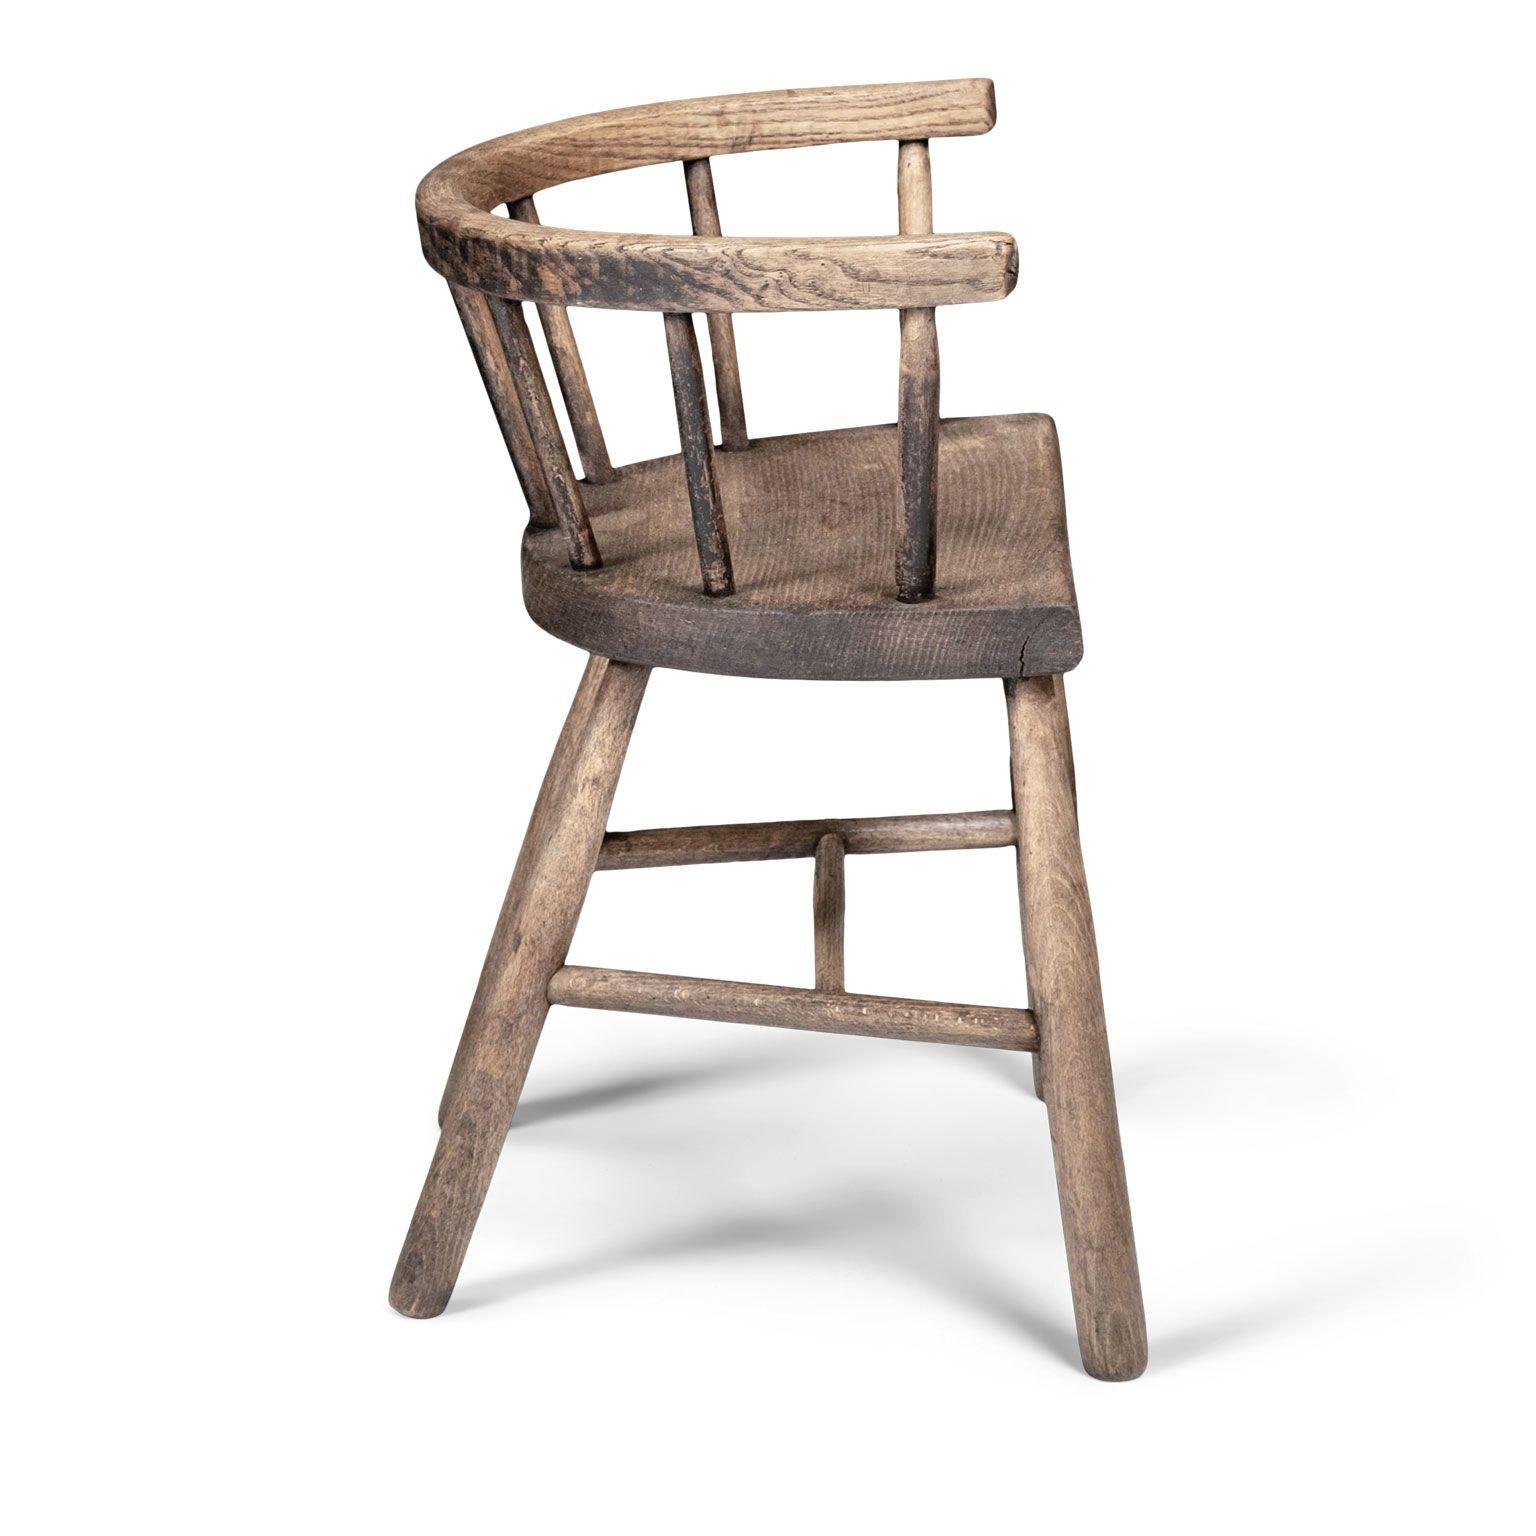 Folk Art 19th Century Small Vernacular Chair